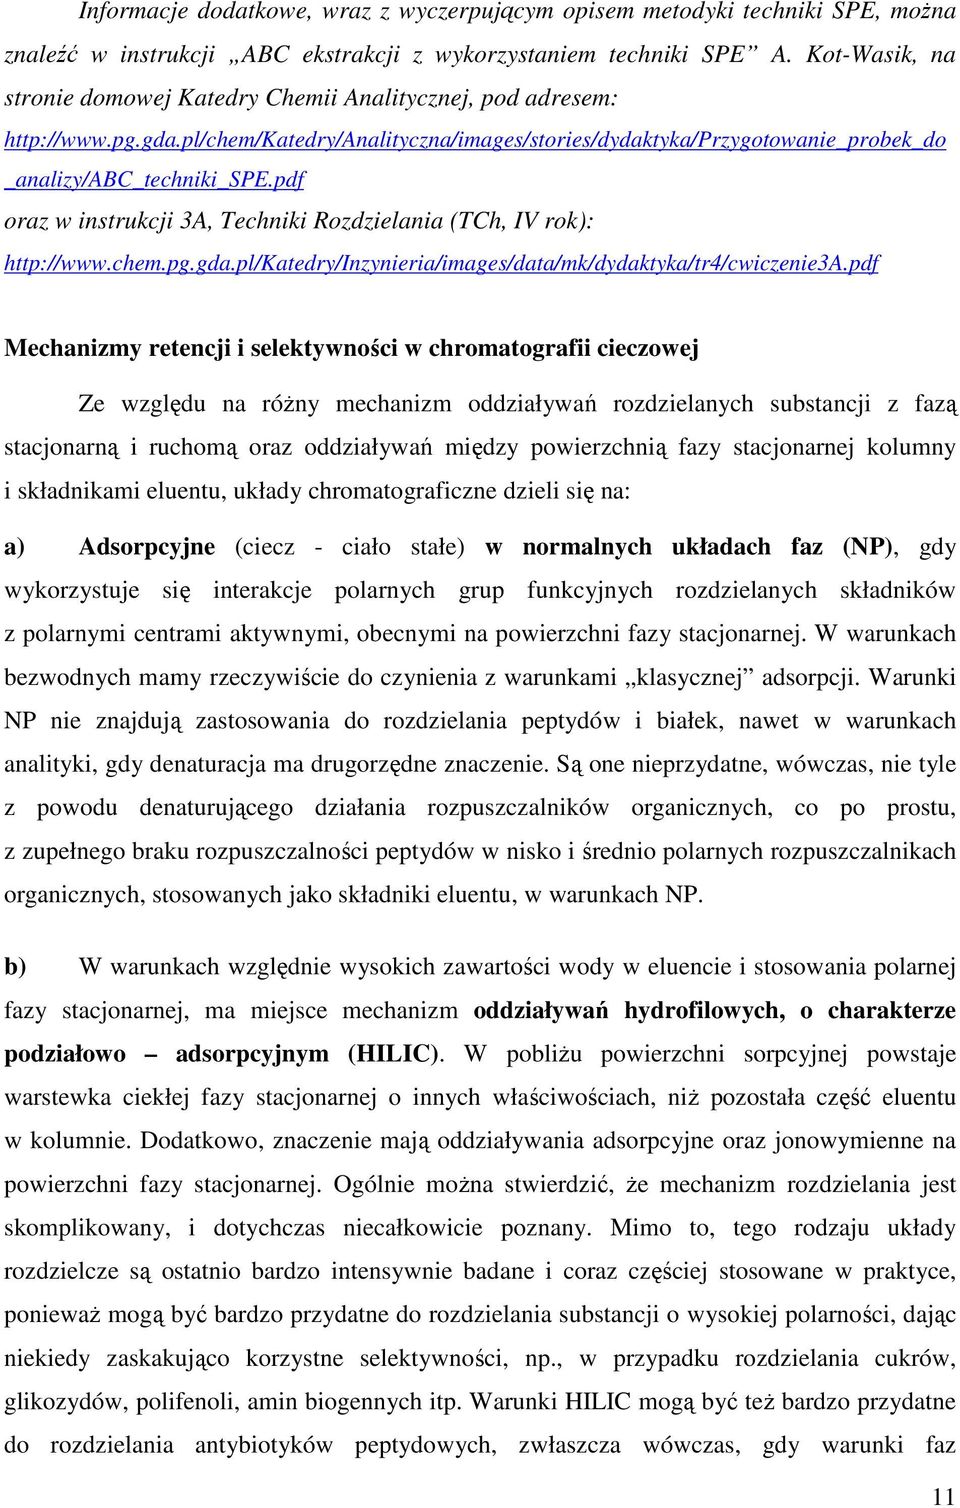 pdf oraz w instrukcji 3A, Techniki Rozdzielania (TCh, IV rok): http://www.chem.pg.gda.pl/katedry/inzynieria/images/data/mk/dydaktyka/tr4/cwiczenie3a.